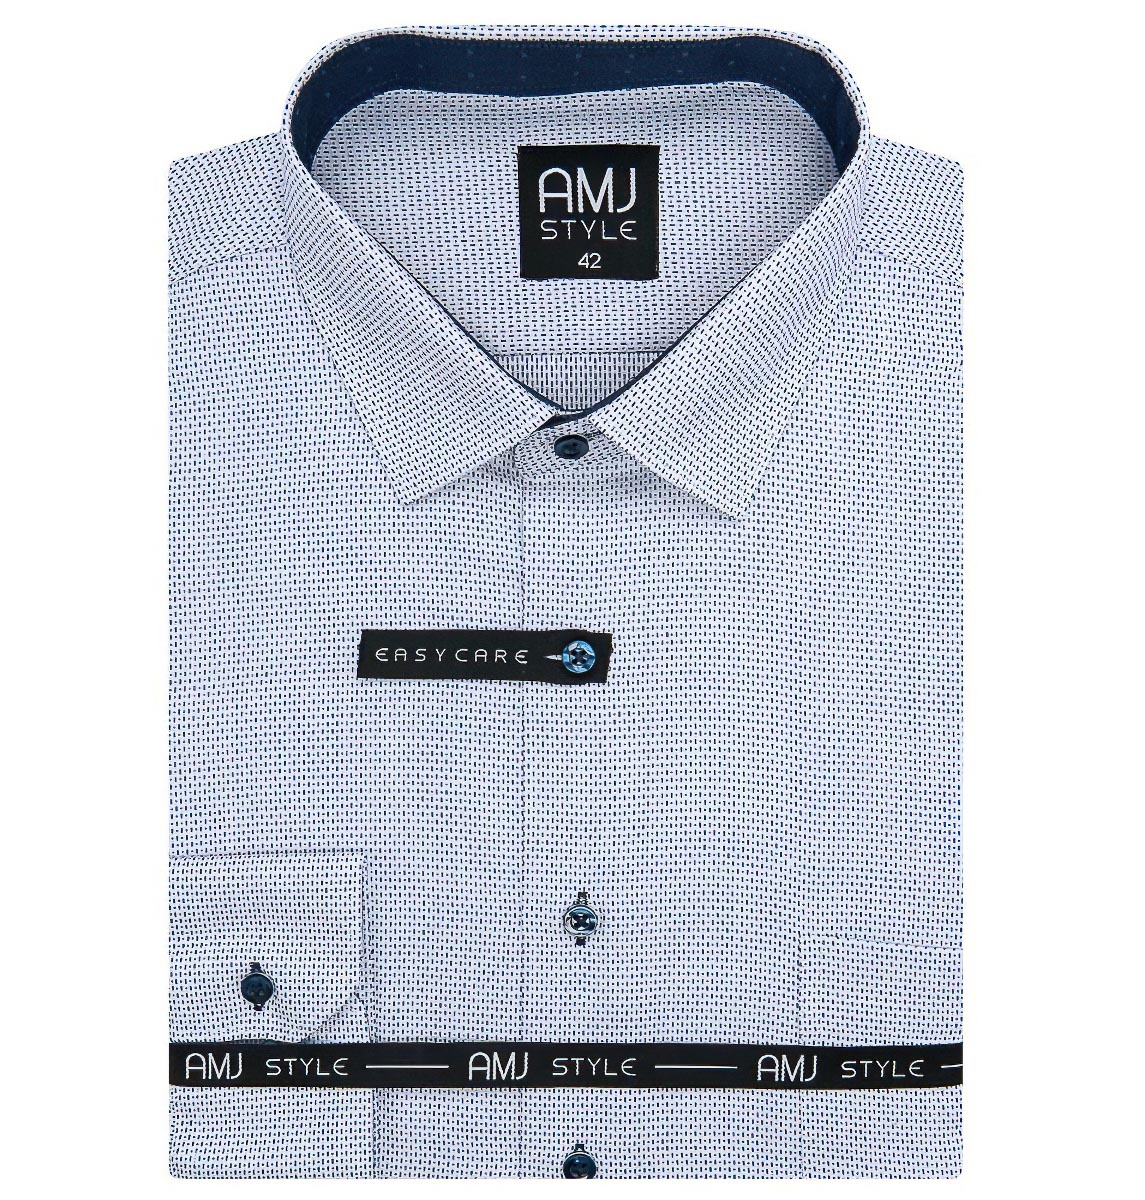 Pánská košile AMJ, bílá modré čárky a tečky VDR1098, dlouhý rukáv (regular + prodloužený slim-fit)